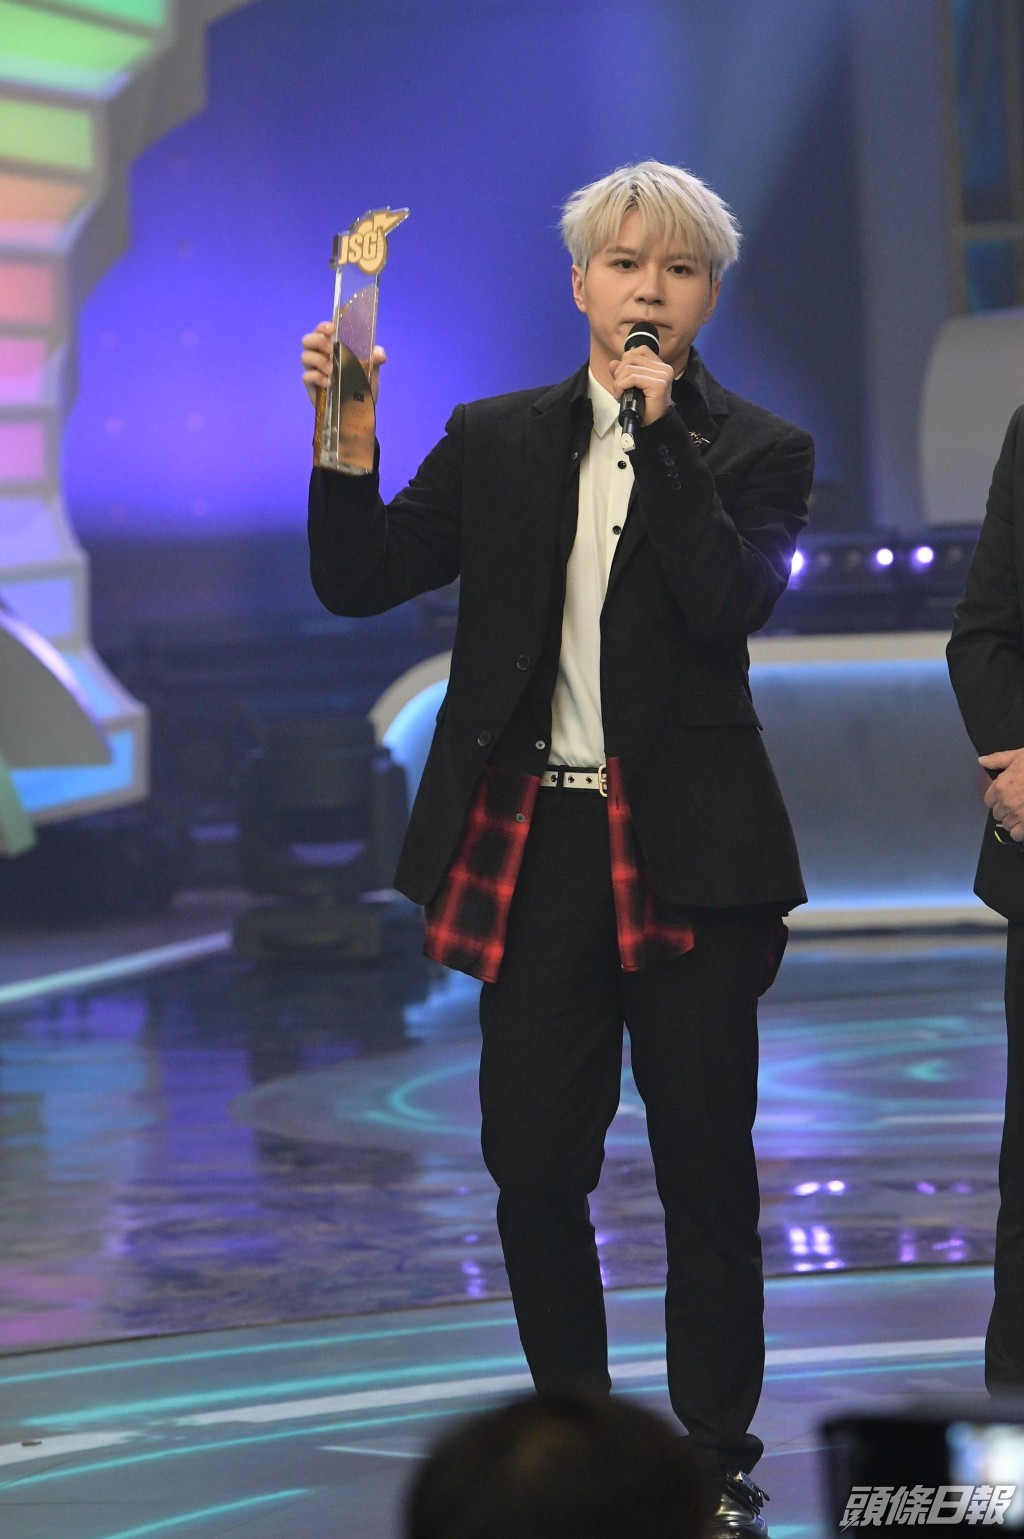 《2020年度勁歌金曲頒獎典禮》中，應智越奪唱作新人獎。